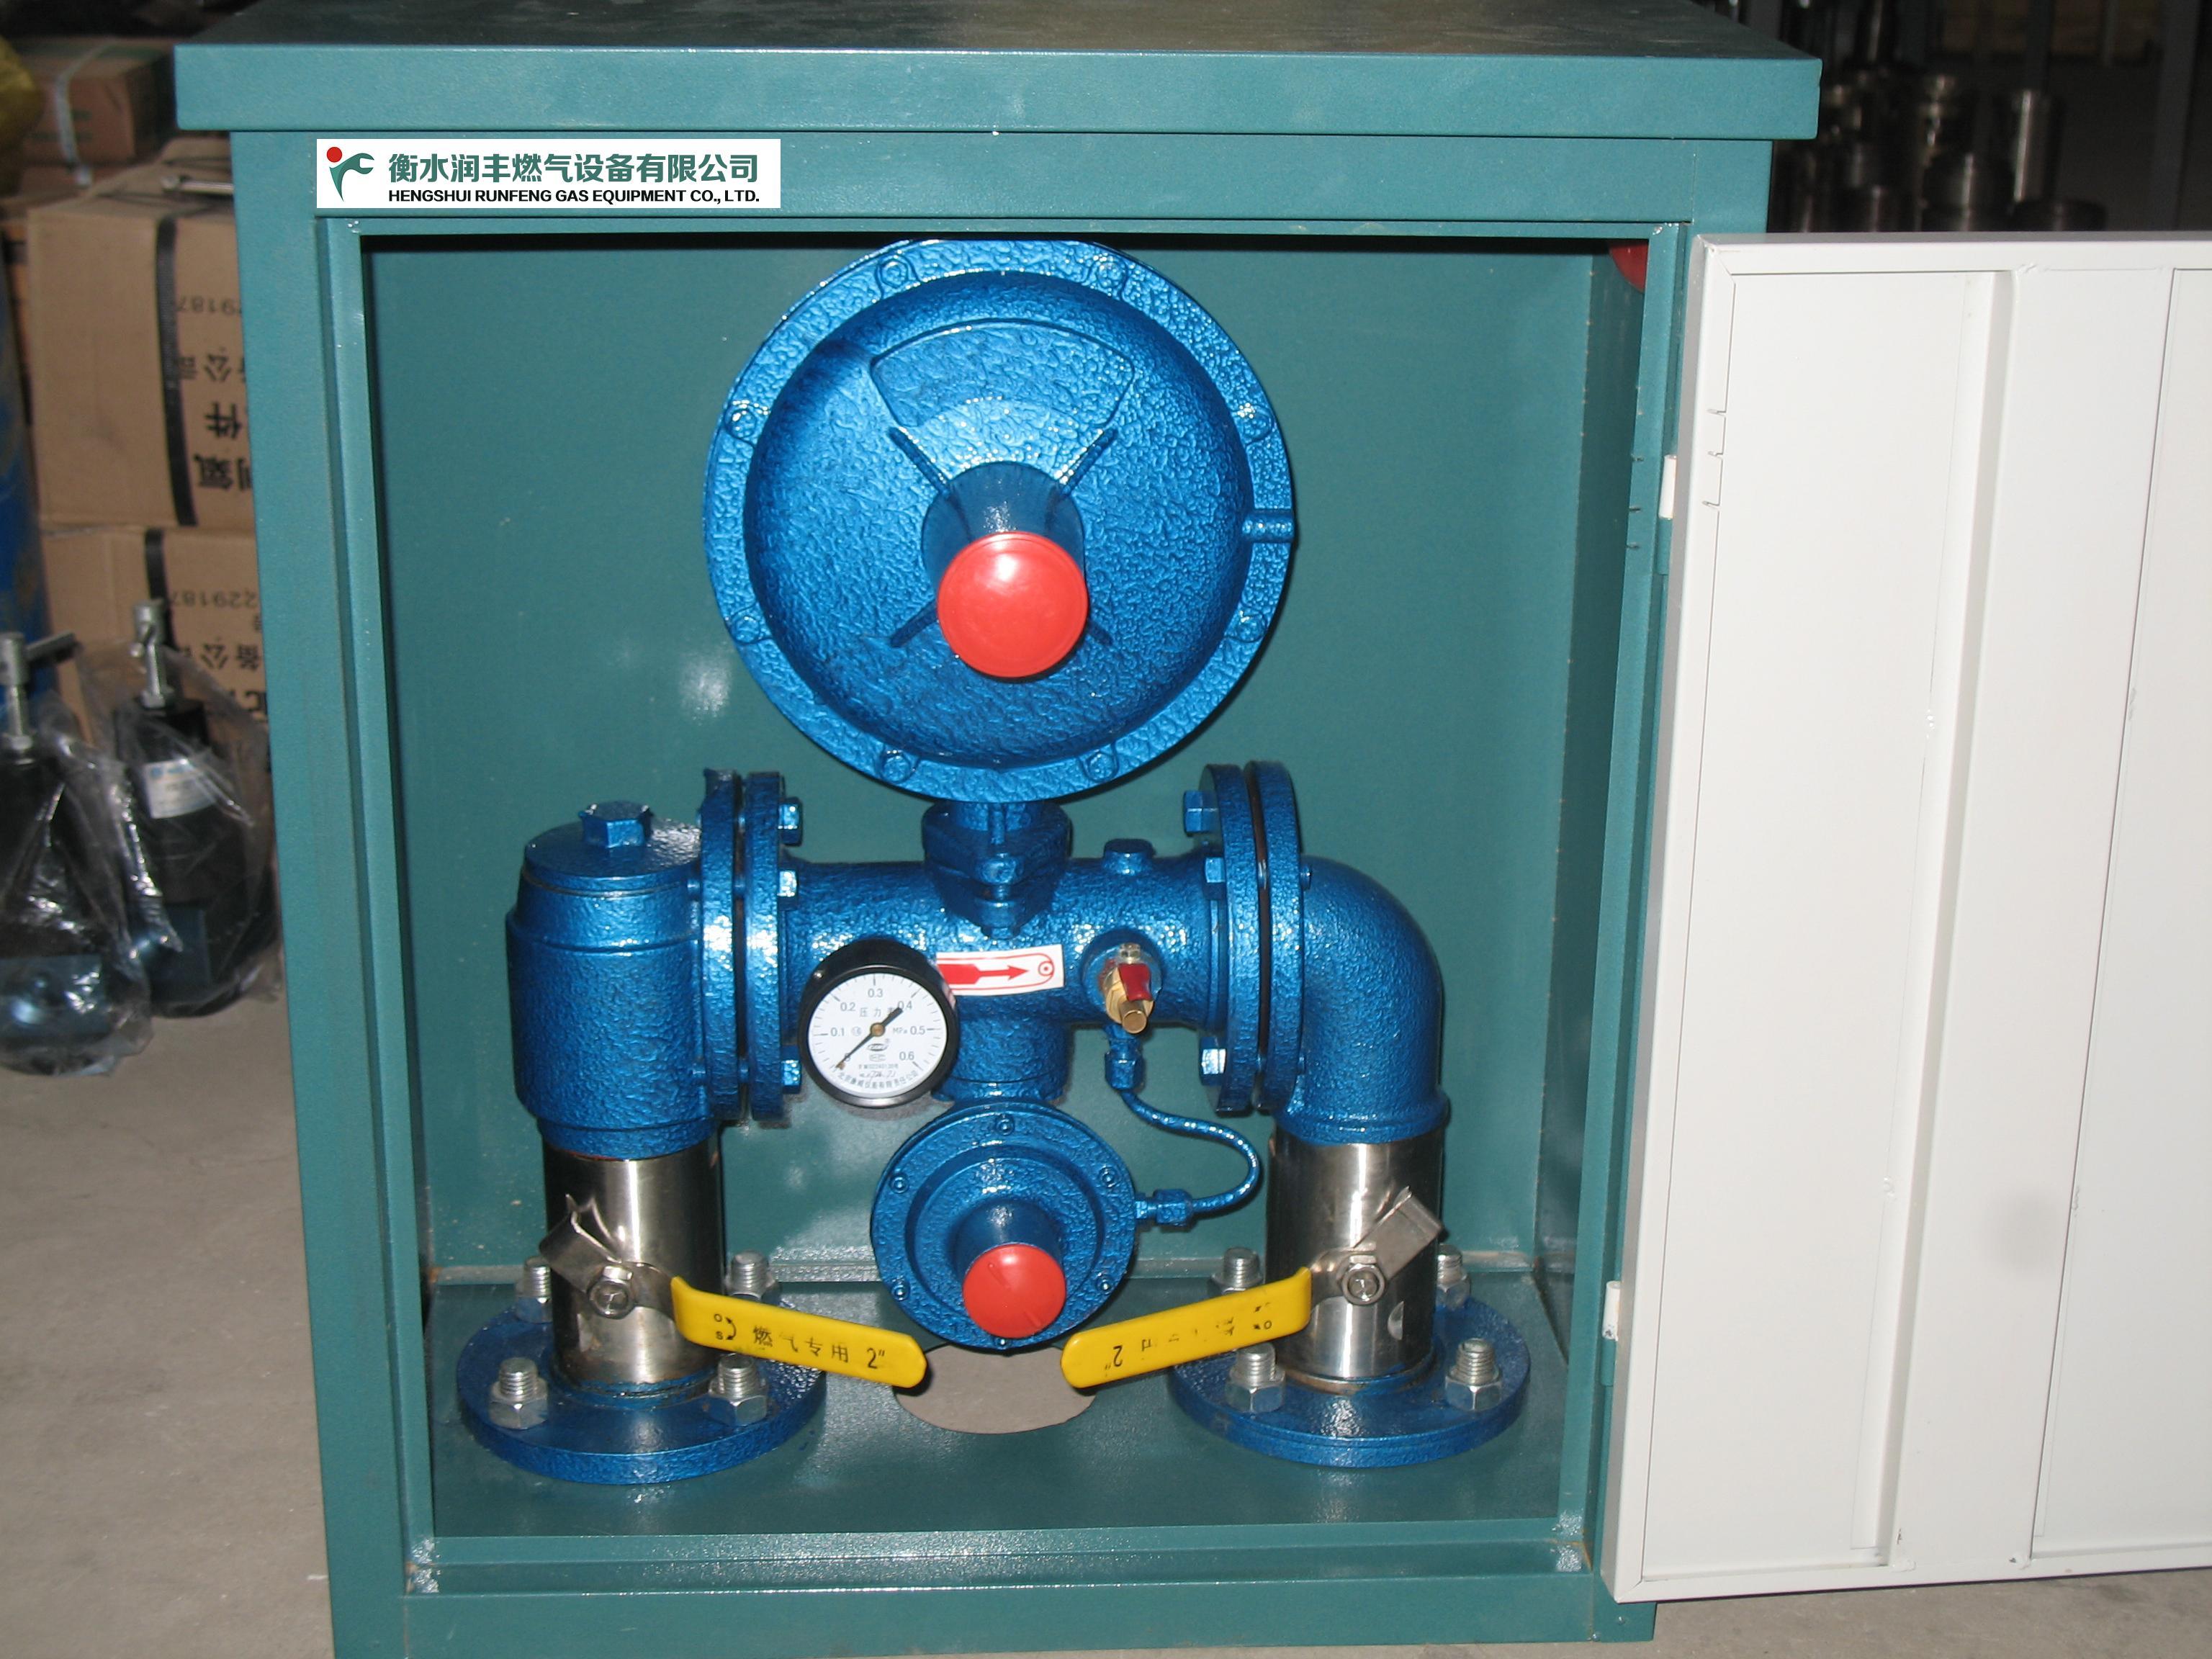 方正县燃气调压计量站产品燃气调压箱的特点与作用